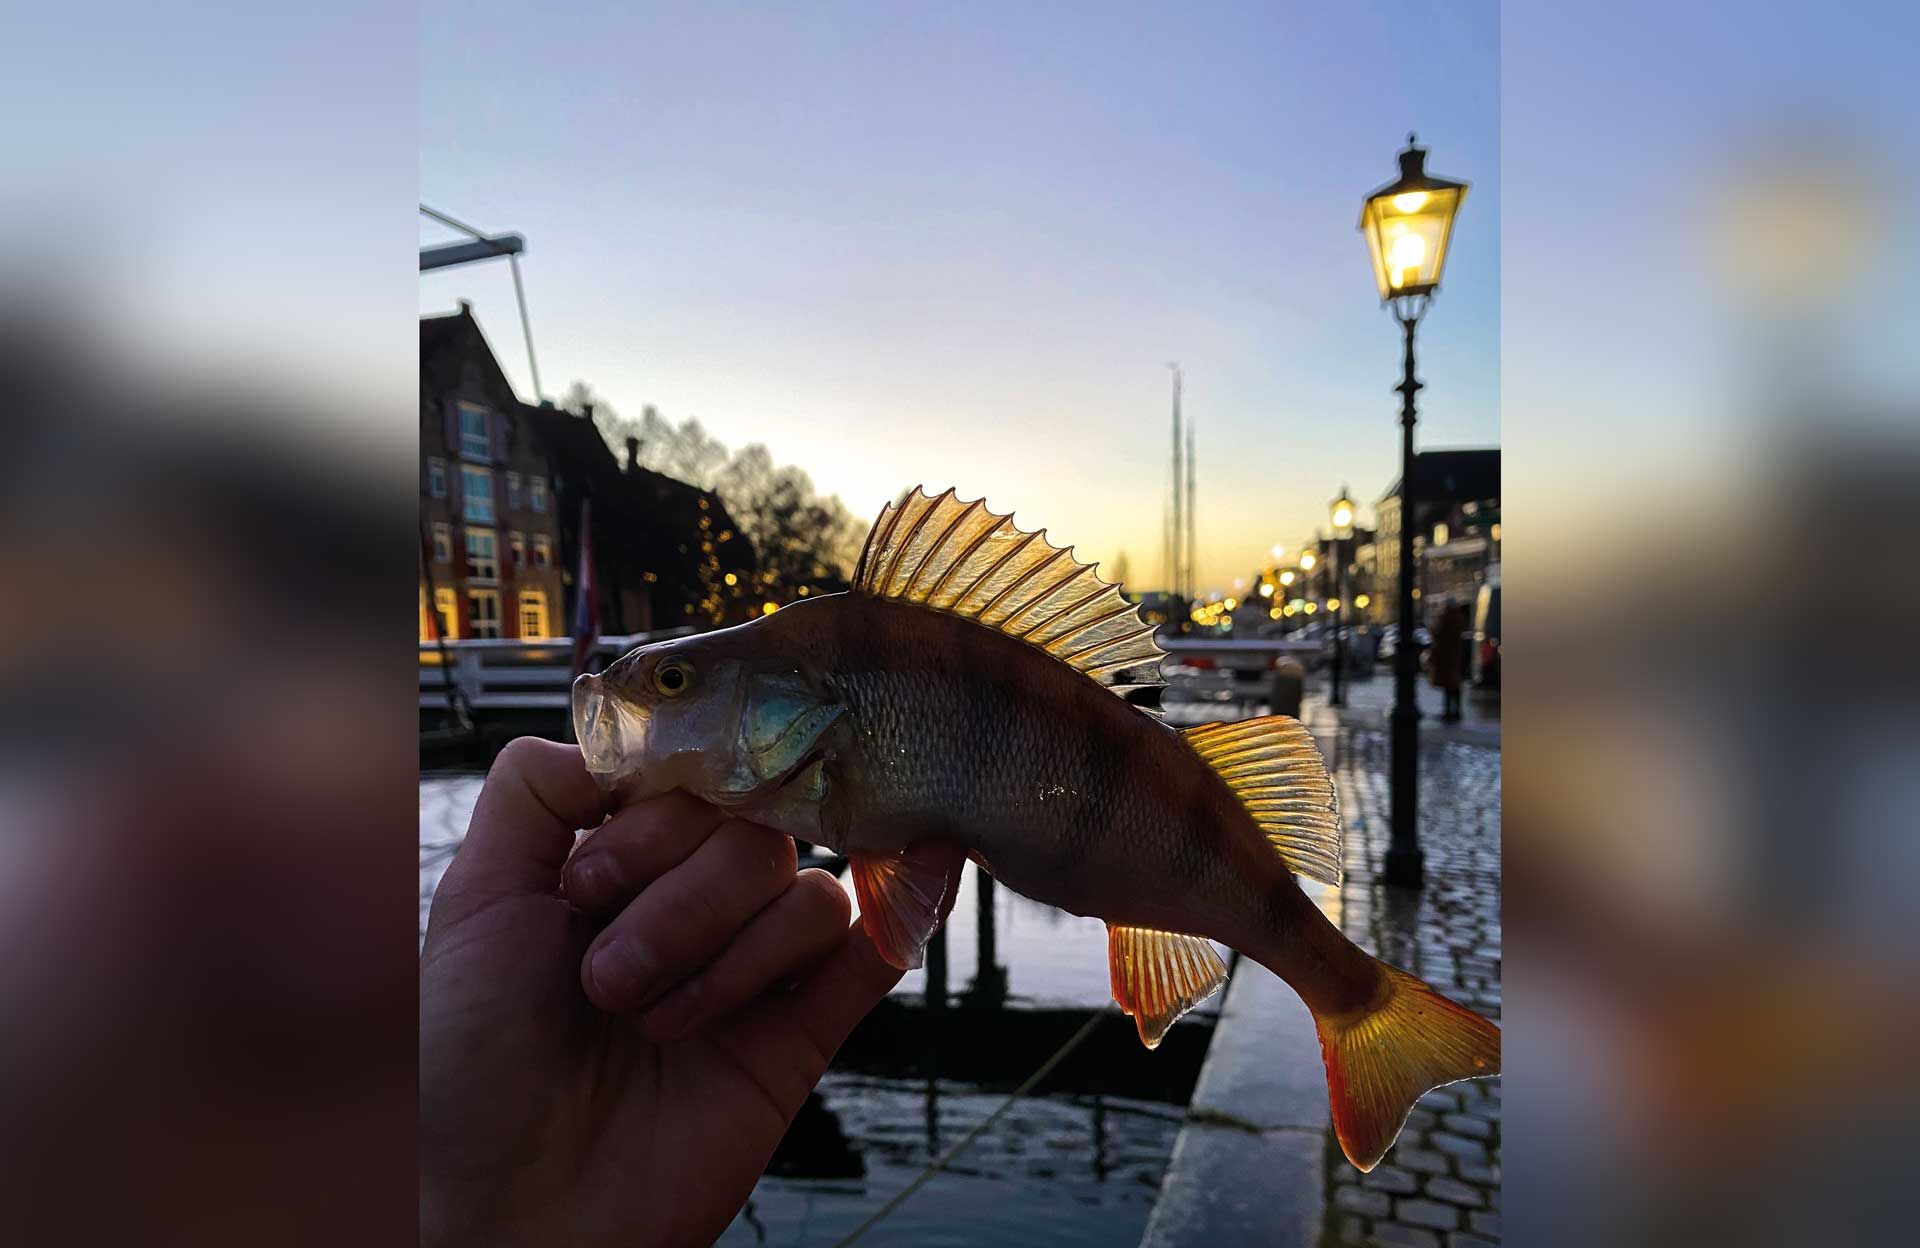  Egli mitten in der Stadt bei wunderschöner Abendstimmung – das ist Streetfishing.  